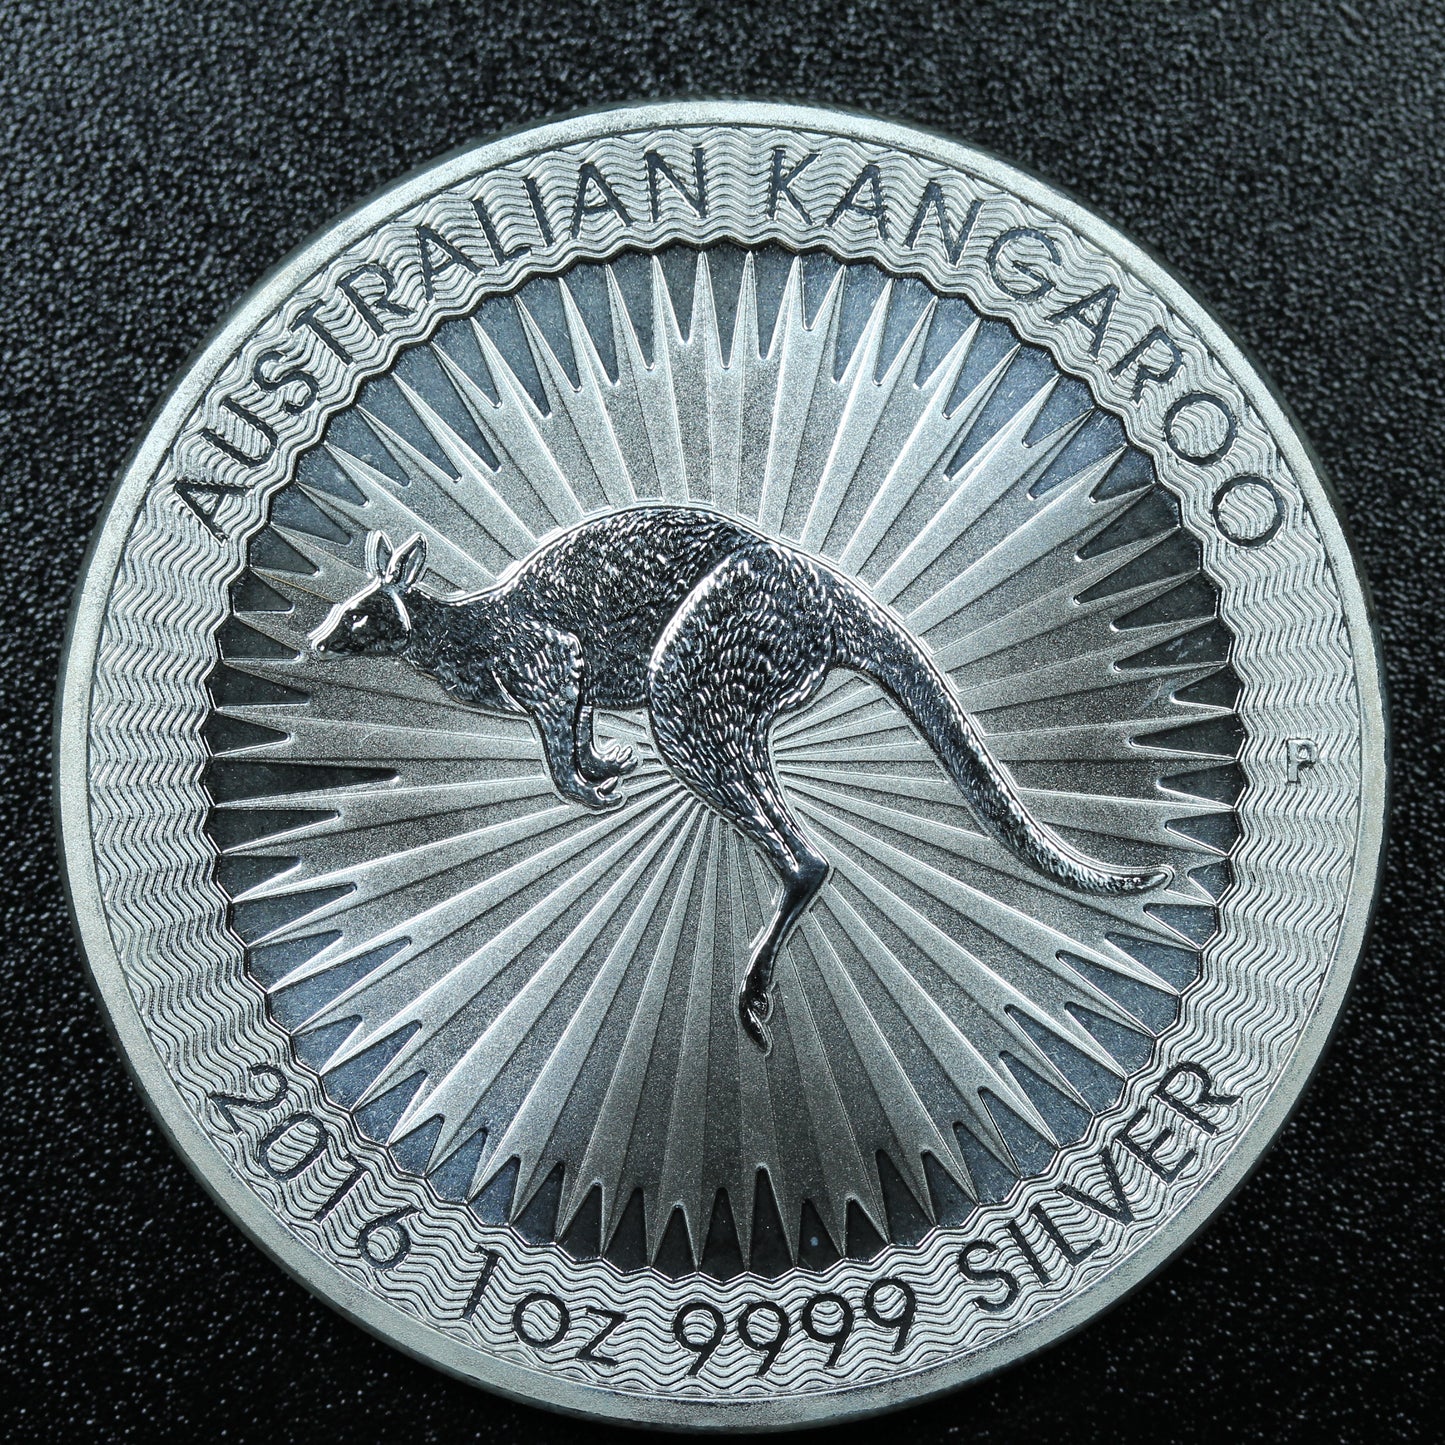 2016 1 oz Silver .9999 Fine Silver Australian Kangaroo $1 Coin - Spots